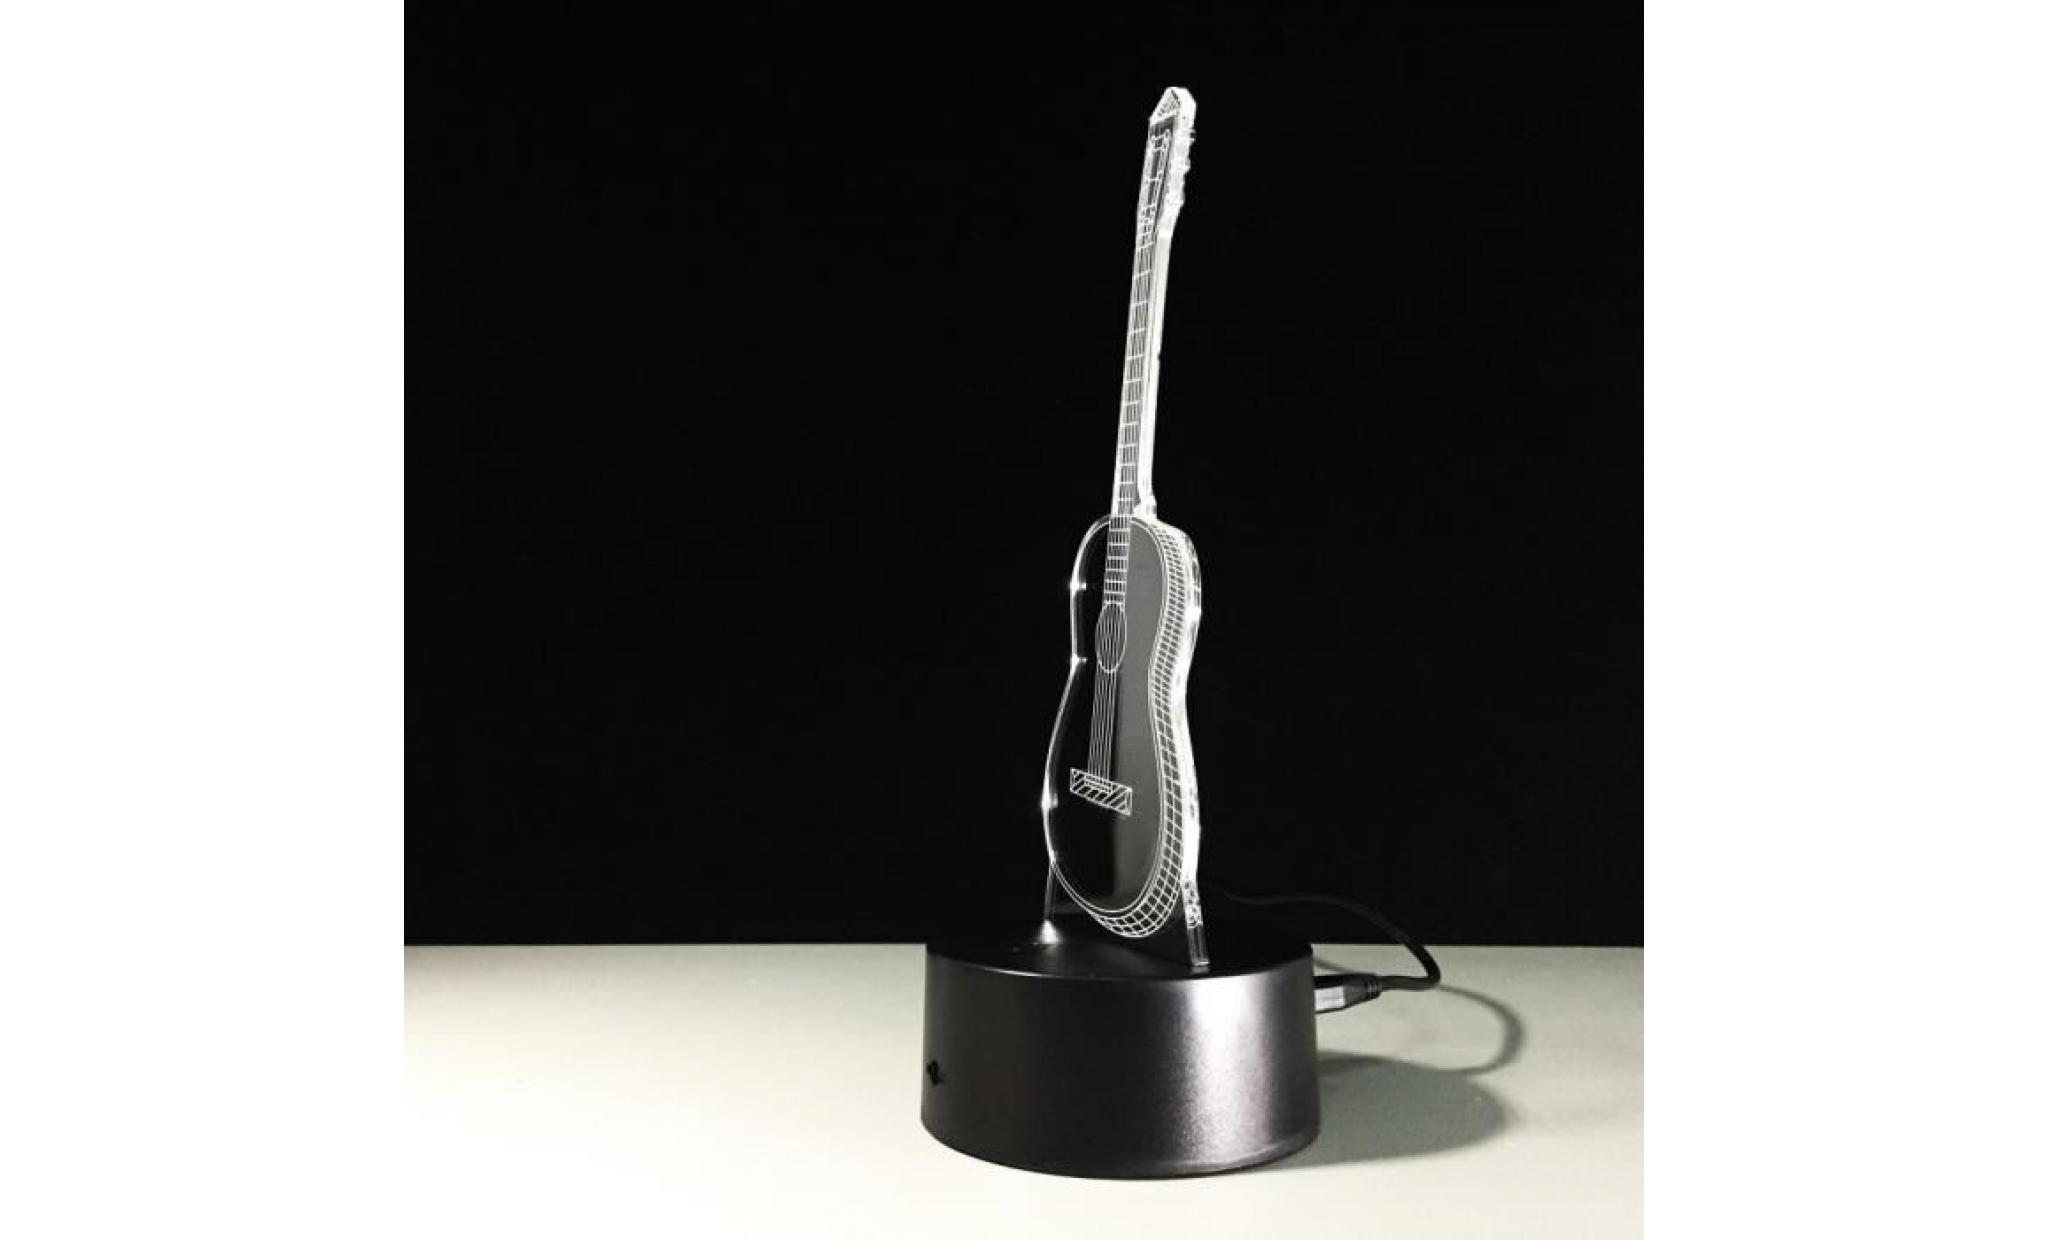 led guitar ukulele 3d night light 7 couleurs table lampe de bureau à touche cadeau de noël npl481 pas cher